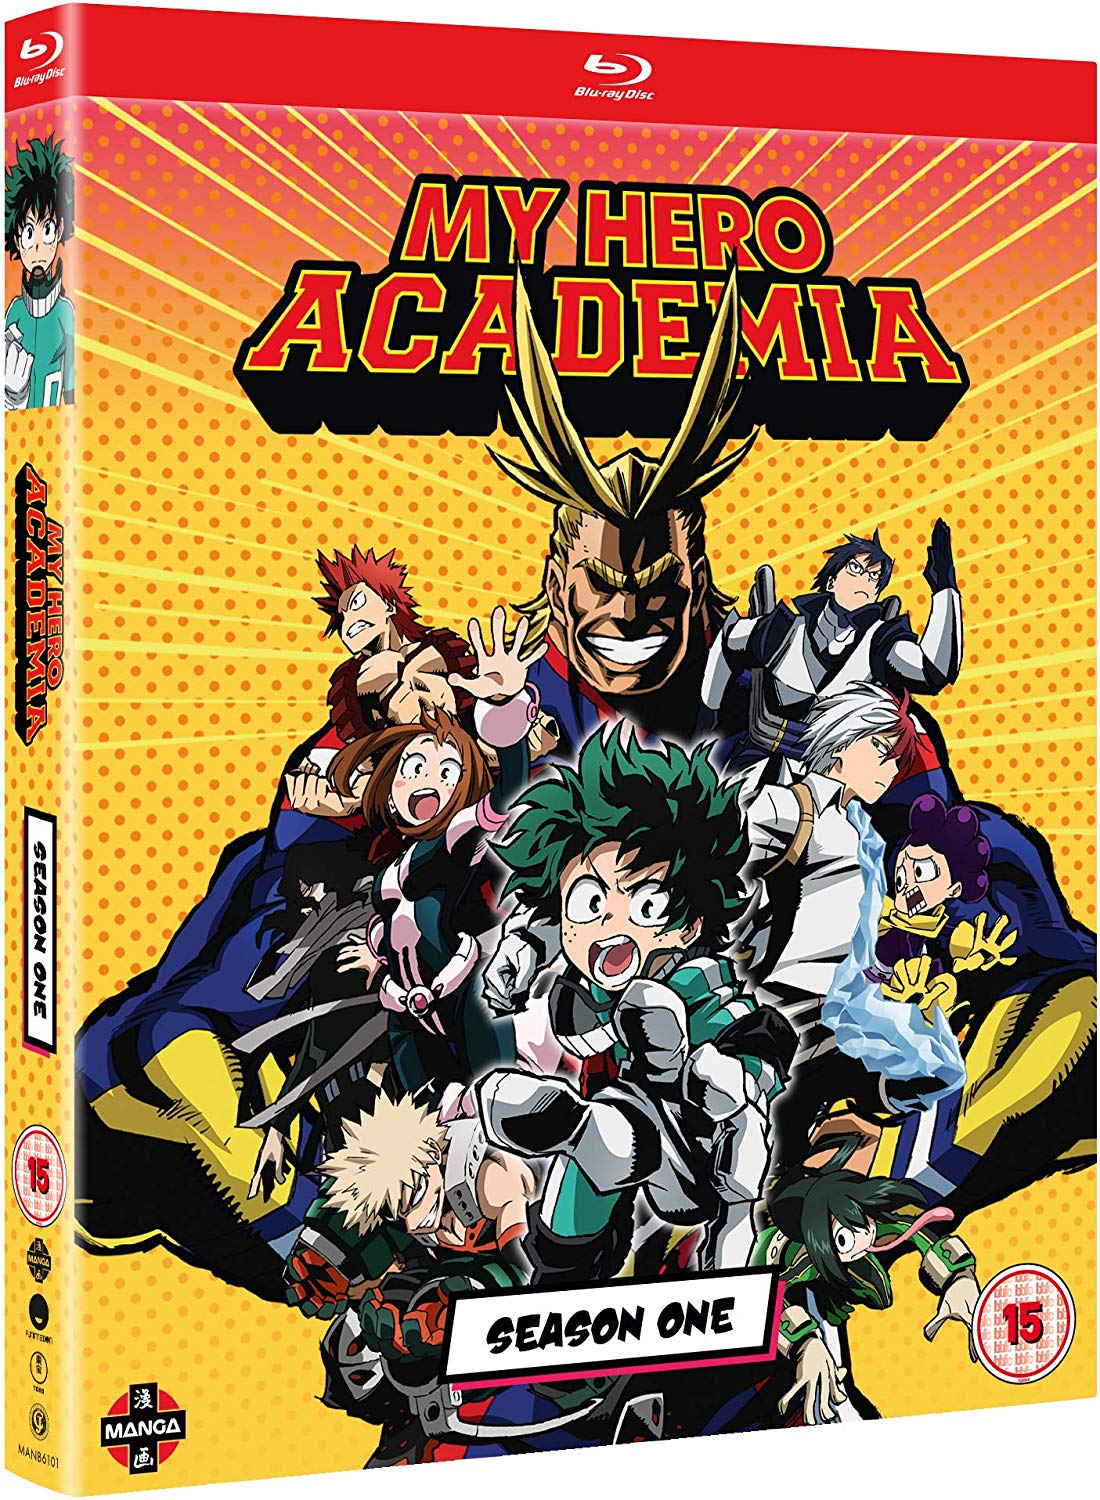 My Hero Academia Season 1 UK Blu-ray & DVD Re-Release Listed on Amazon – Anime UK News1100 x 1500